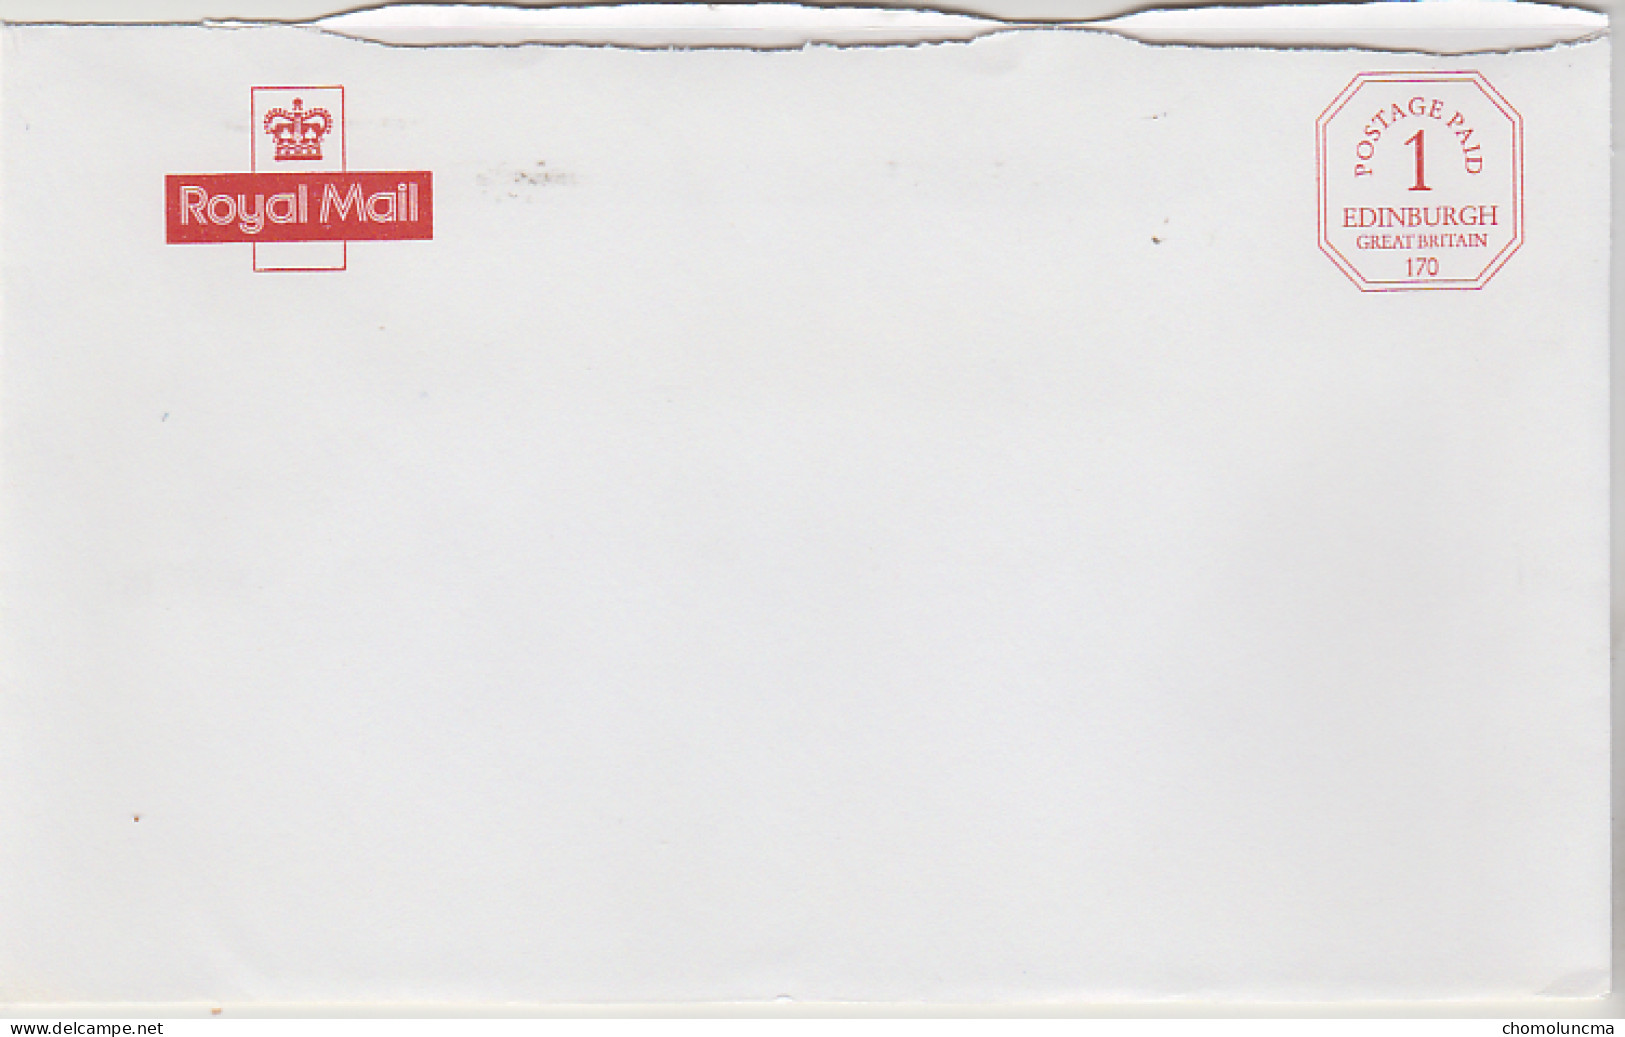 Royal Mail Cancel Postage Paid Edinburgh Printed In Red Port Payé Du Service Philatélique De Grande Bretagne - Dienstzegels